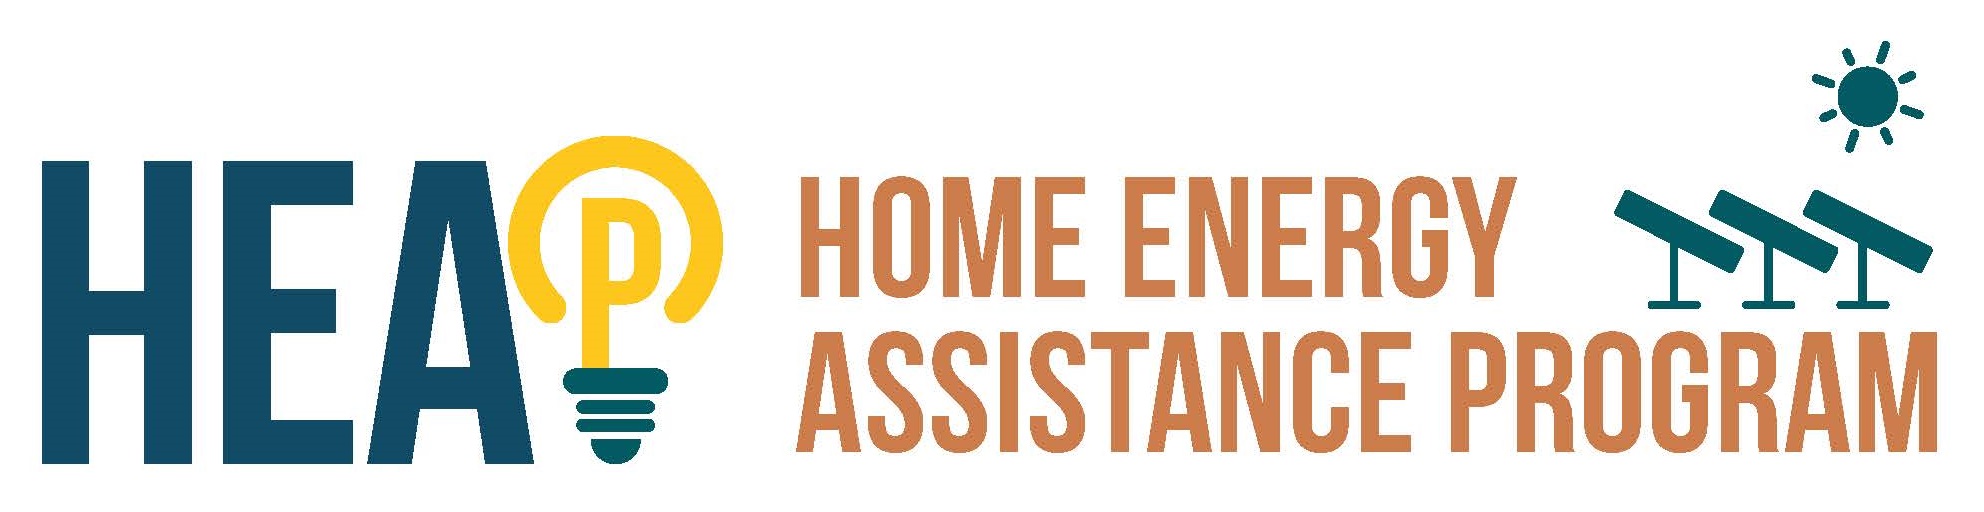 Home Energy Assistance Program Logo